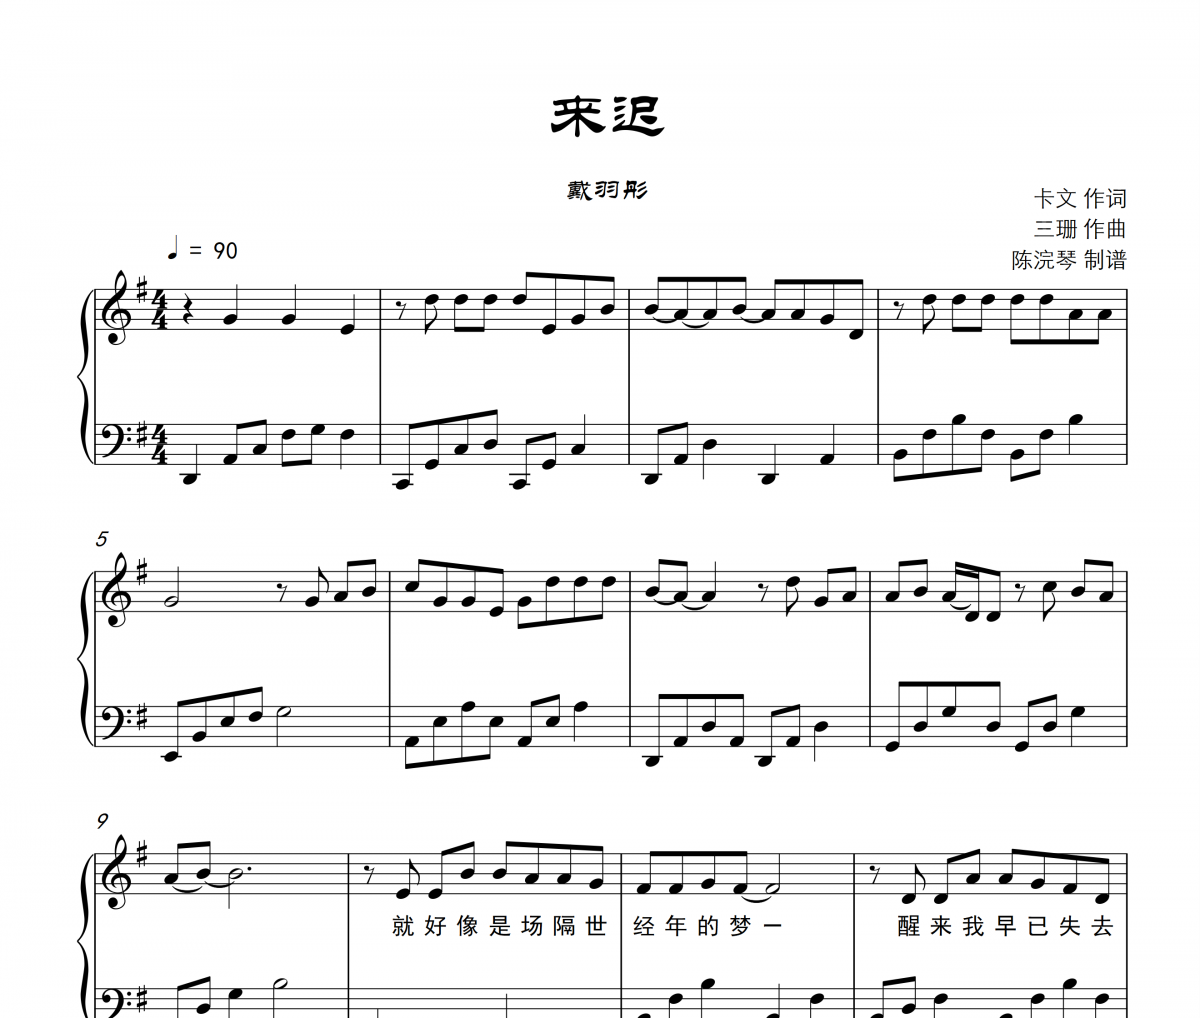 戴羽彤-来迟【附歌词】钢琴谱五线谱